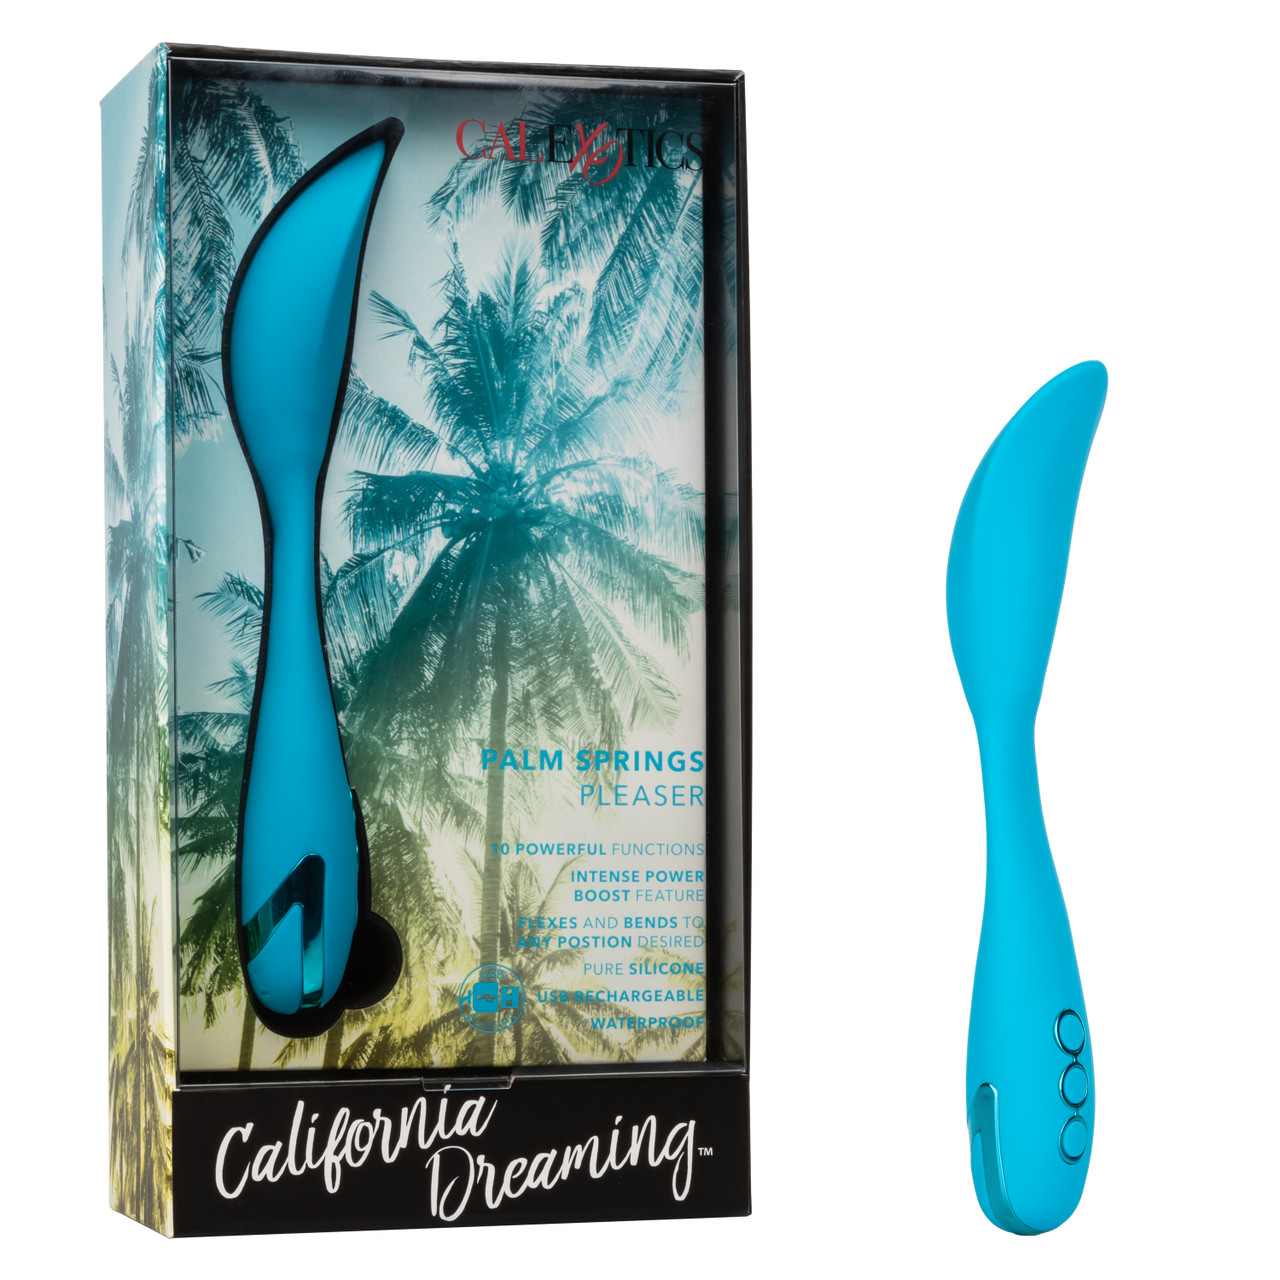 Вибратор с фиксацией формы CalExotics California Dreaming Palm Springs Pleaser, голубой